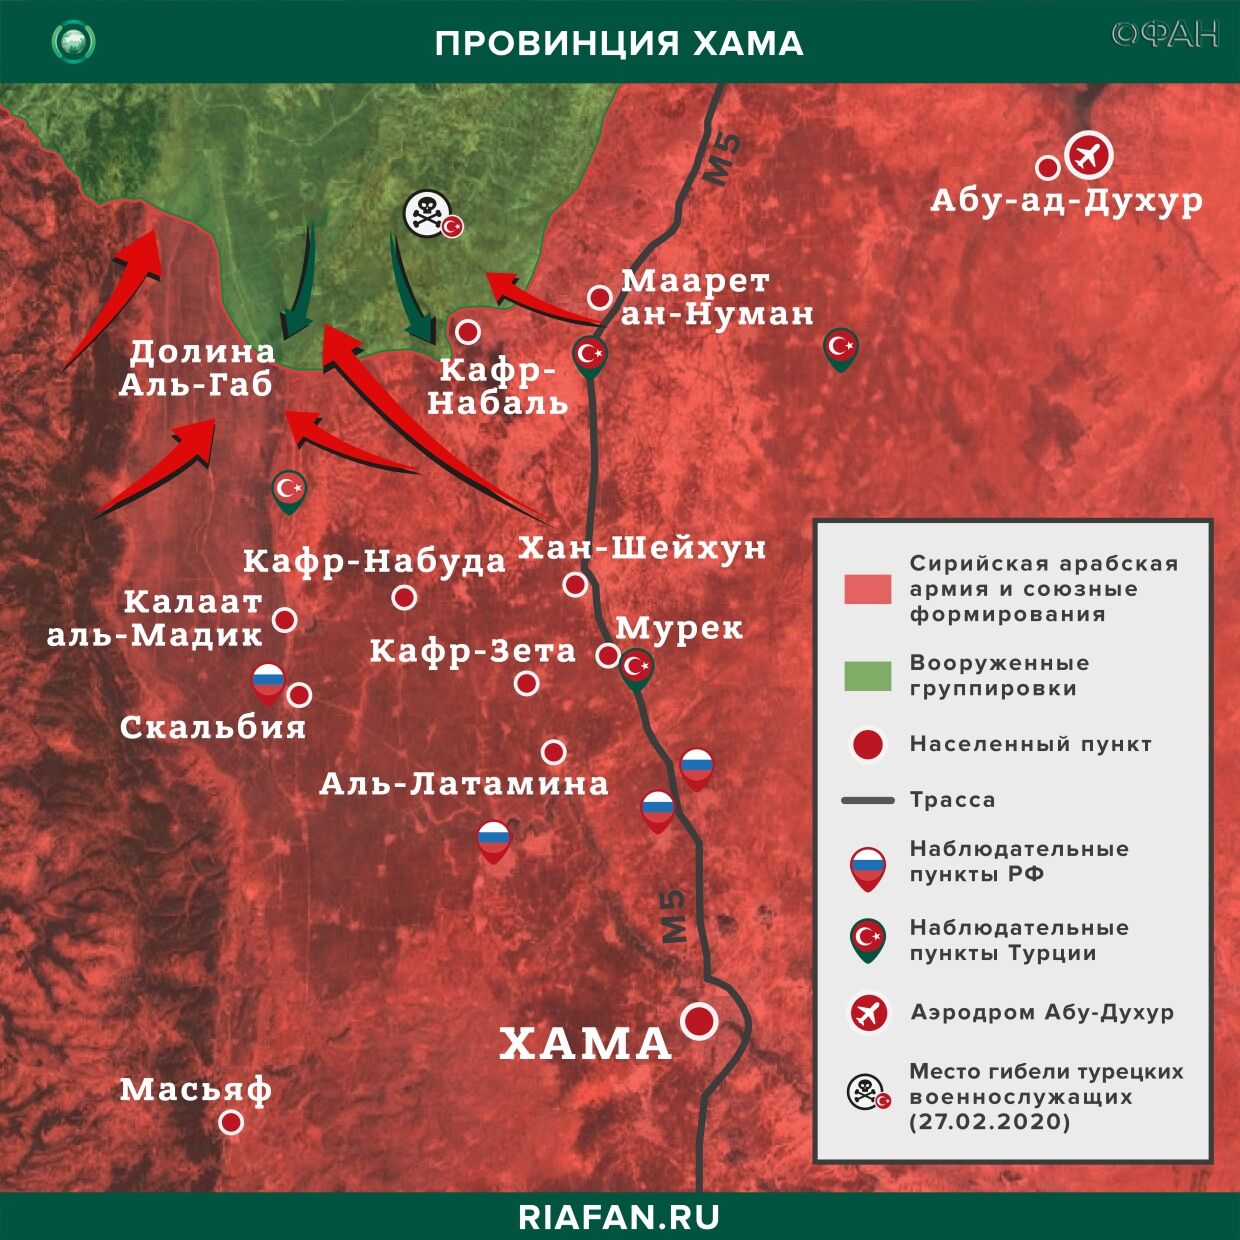 Сирия новости 21 мая 22.30: авиаудар ВВС международной коалиции в Дейр-эз-Зоре, провокации ХТШ в Хаме